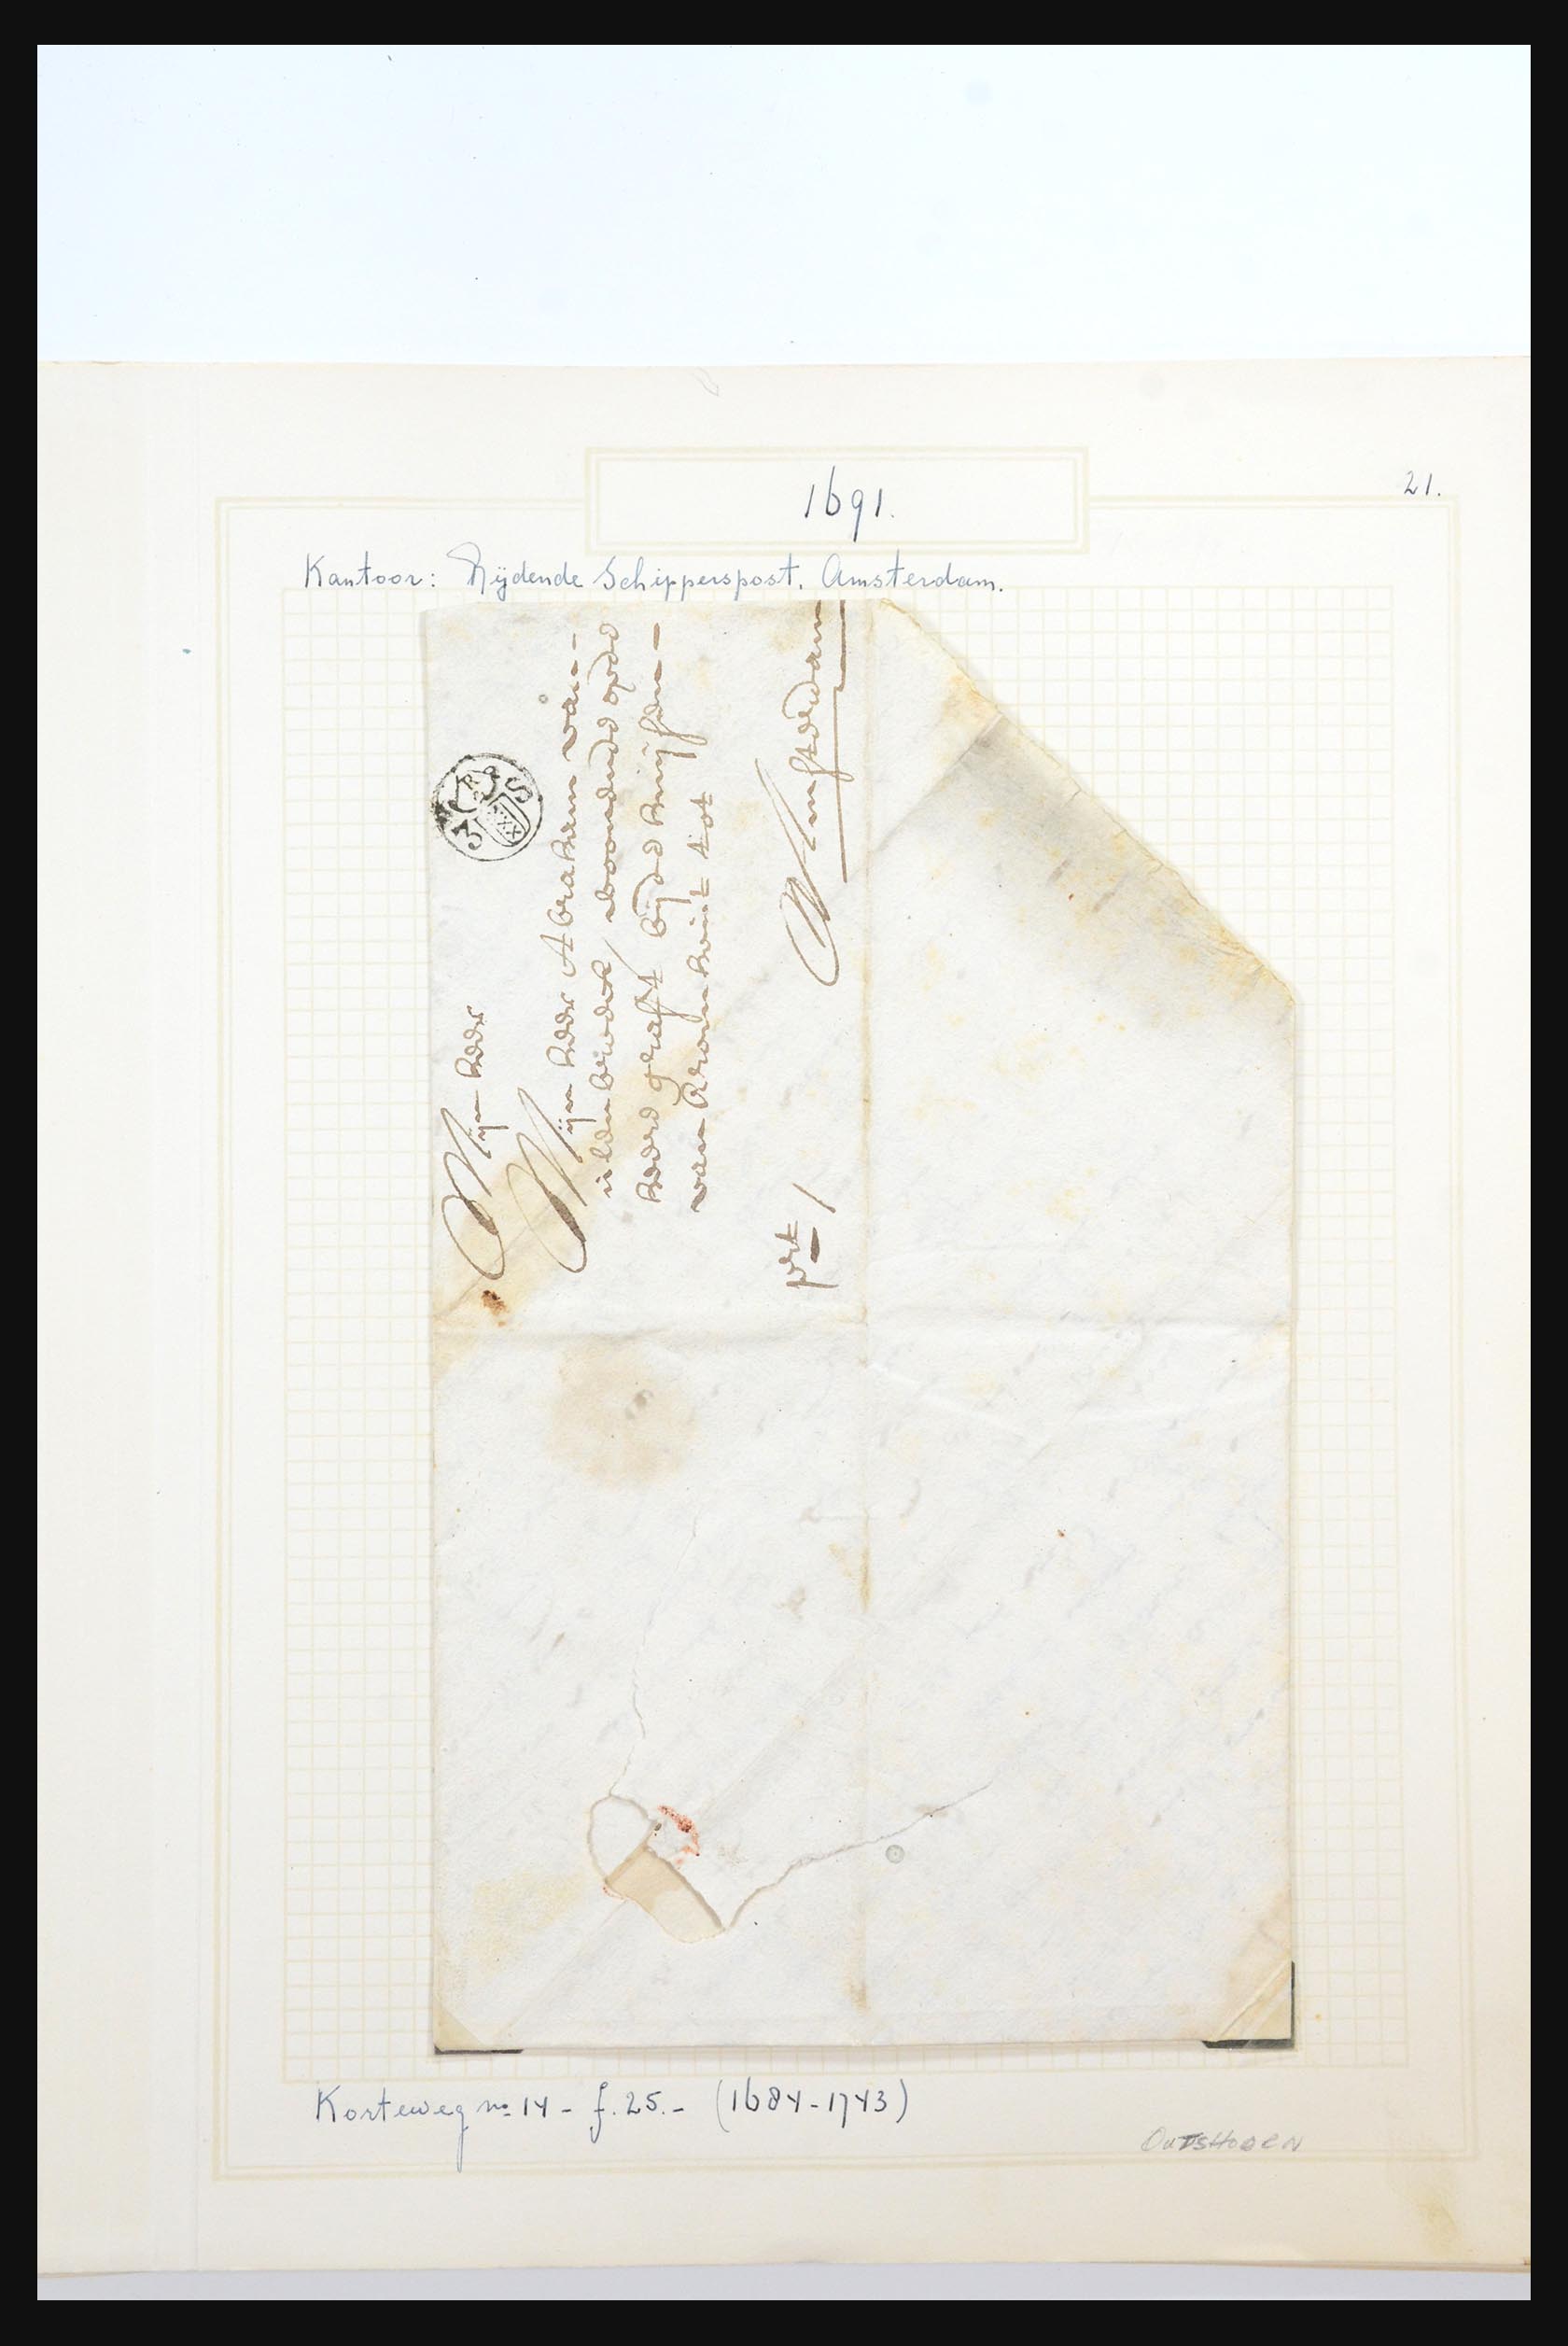 31567 002 - 31567 Nederland brieven 1687-1869.